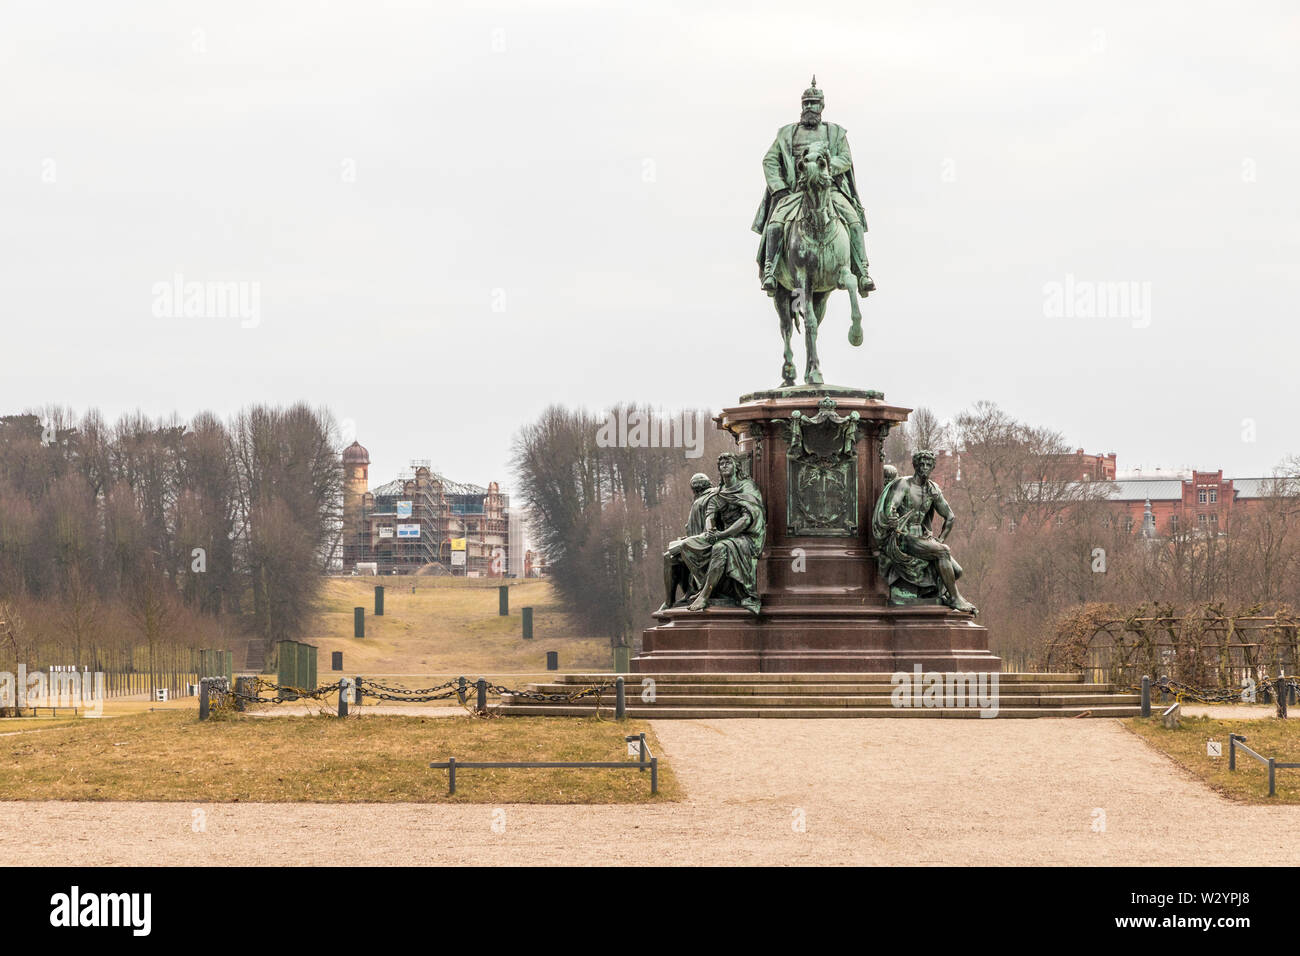 En Schwerin, Alemania. Monumento ecuestre de Federico Francisco II, Gran Duque de Mecklenburg-Schwerin, cerca del castillo de Schwerin Foto de stock